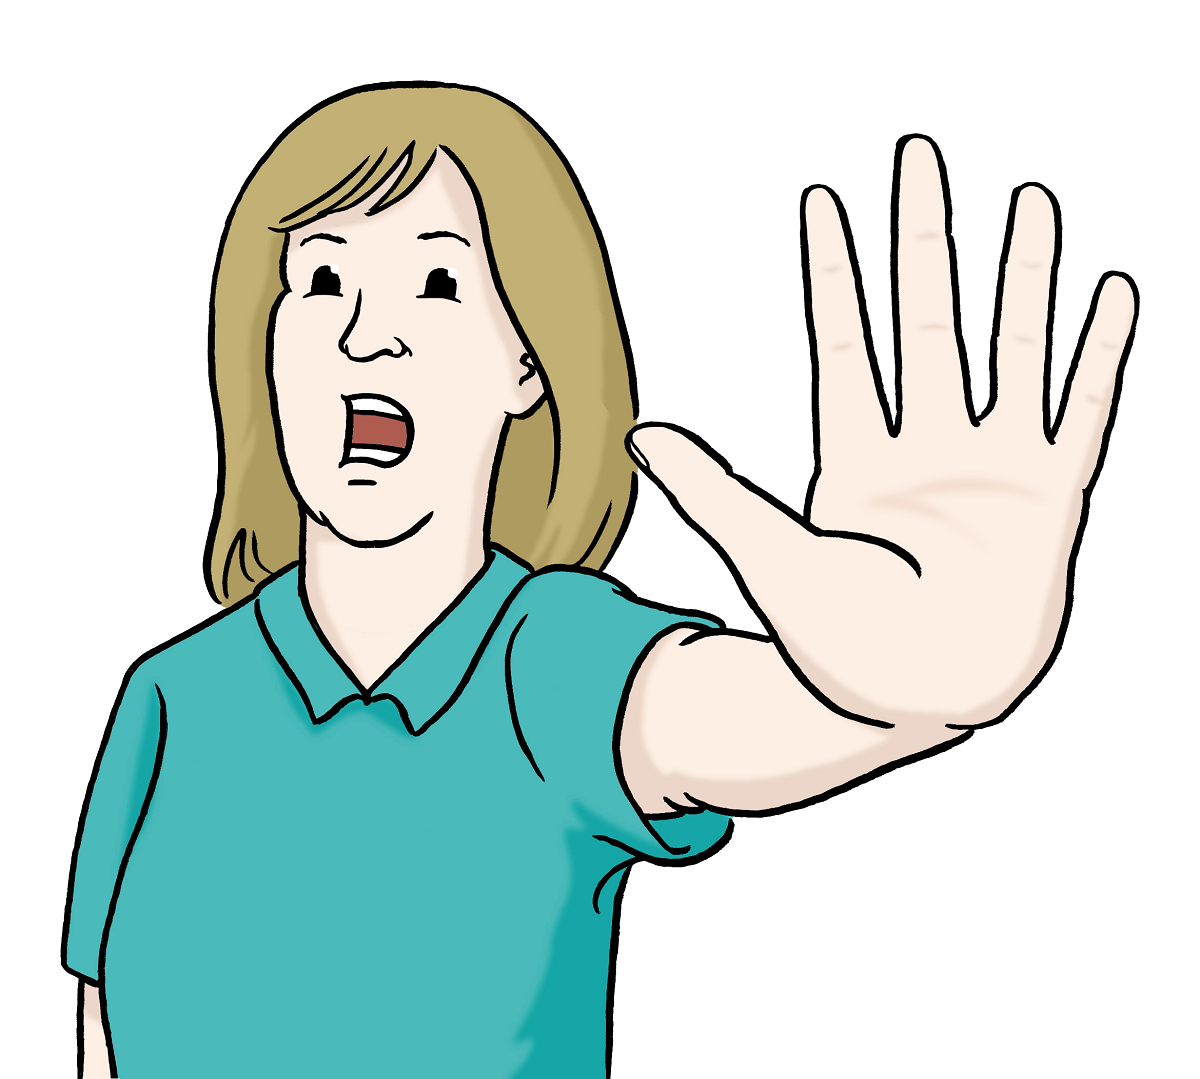 Zeichnung einer Frau, die abwehrend die Hand nach vorne streckt.